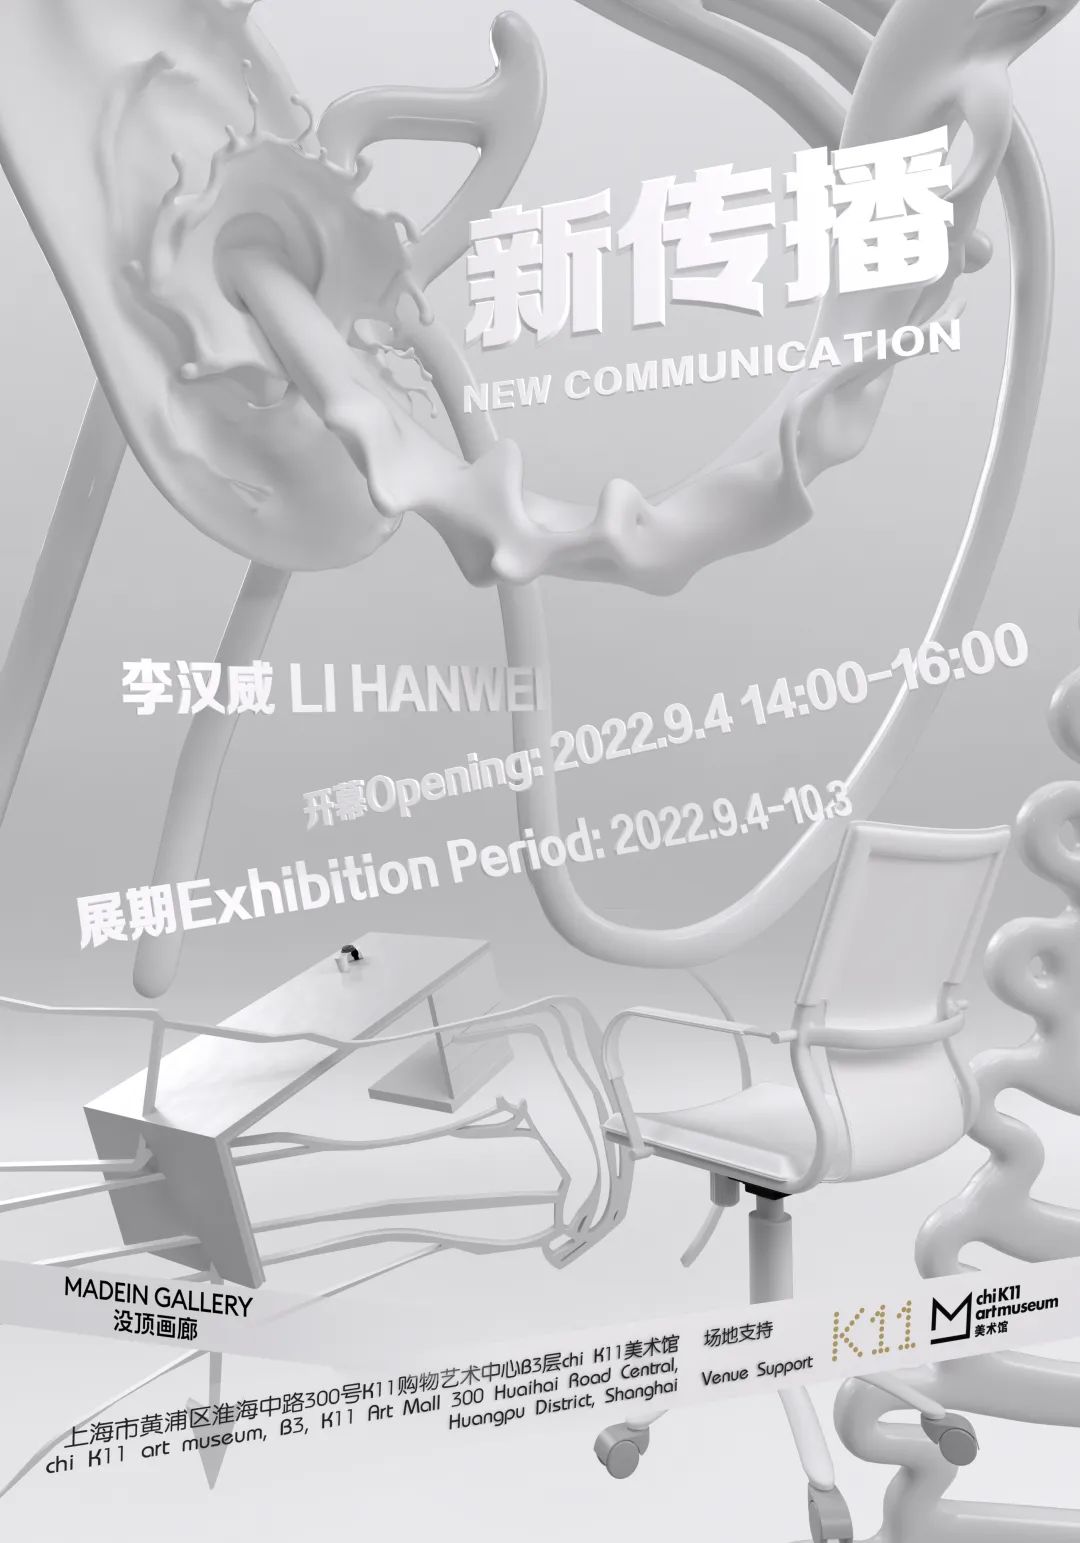 李汉威个展“新传播”将于9月4日在上海 chi K11 美术馆开幕